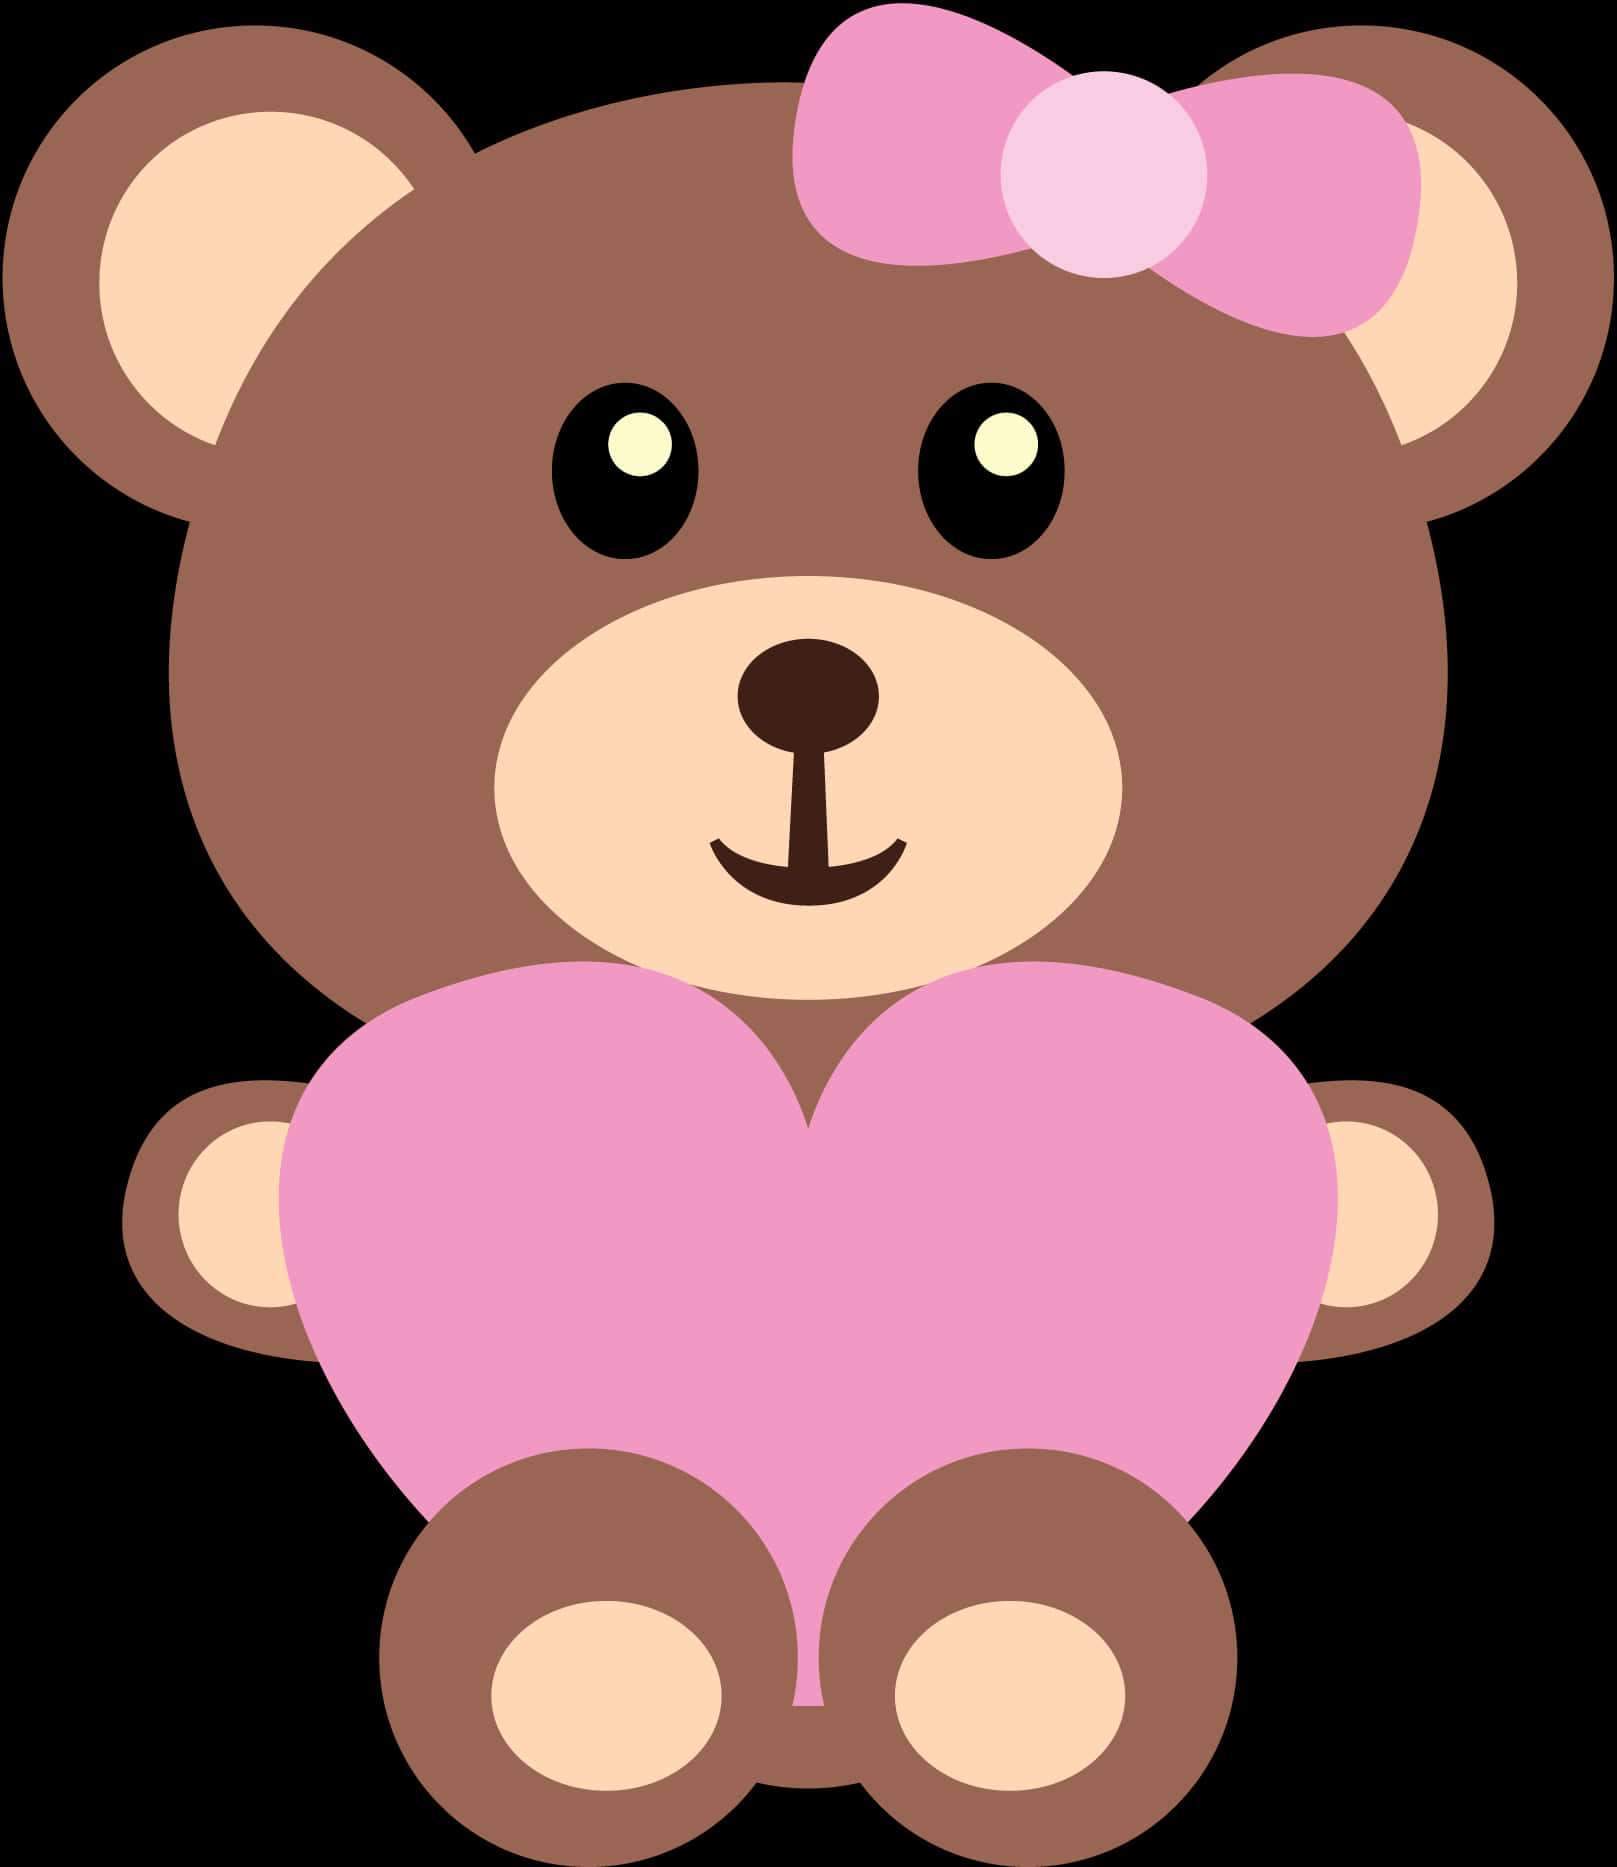 A Cartoon Of A Teddy Bear Holding A Heart